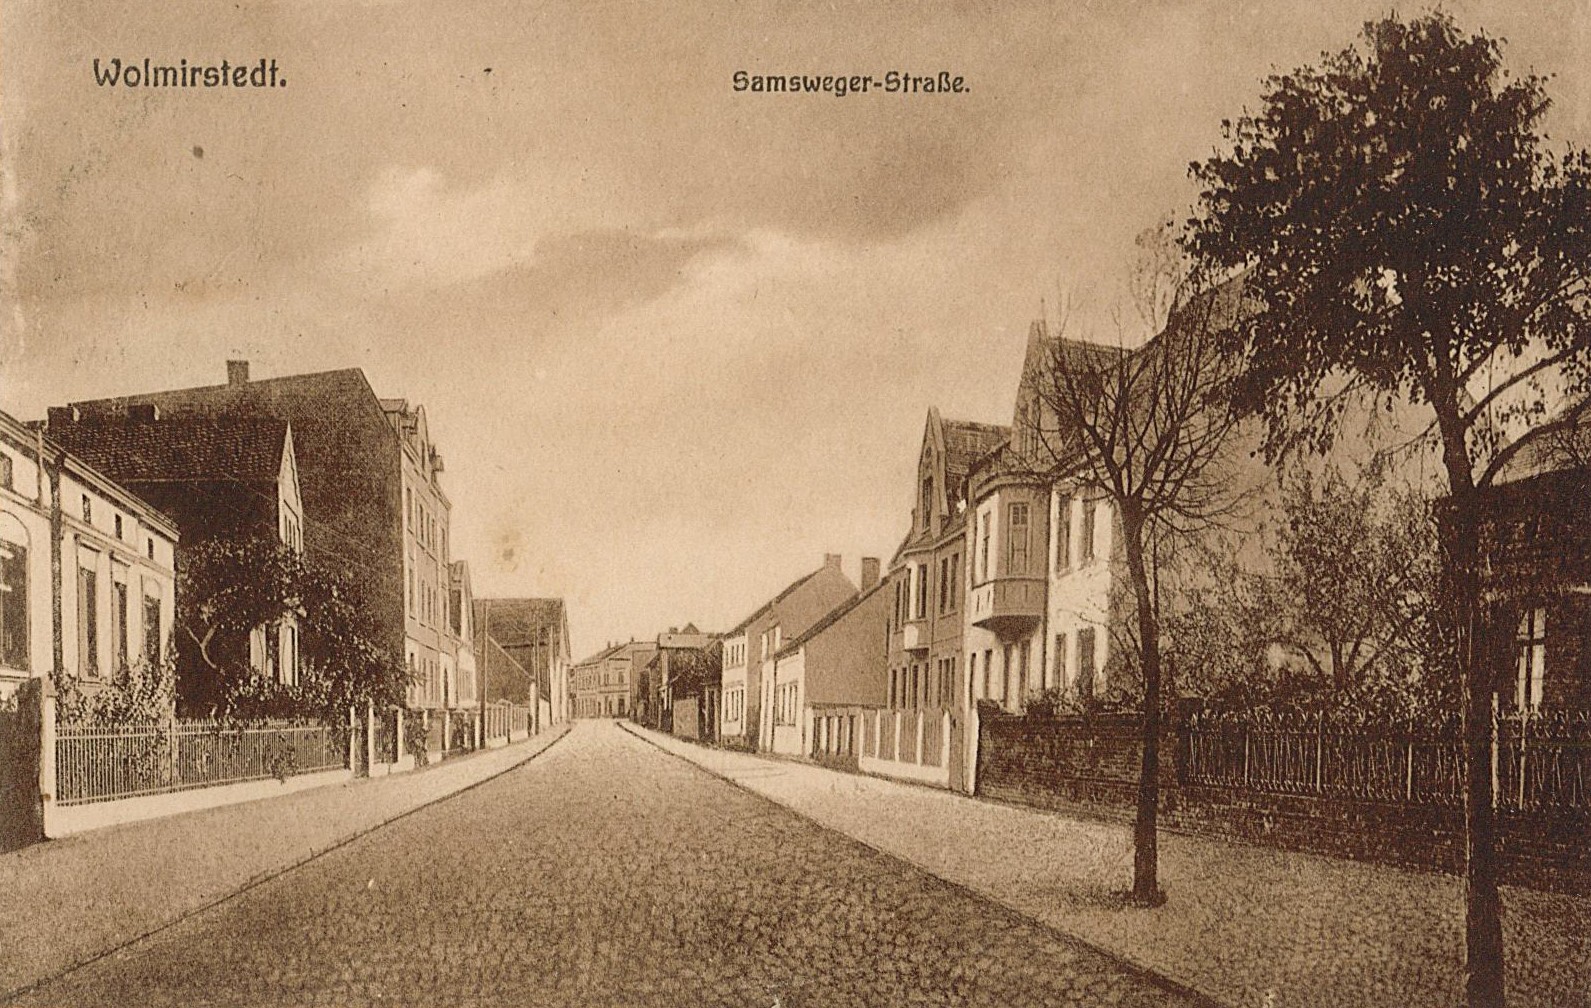 Ansichtskarte "Samsweger Straße, Wolmirstedt", 01.09.1925 (Museum Wolmirstedt RR-F)